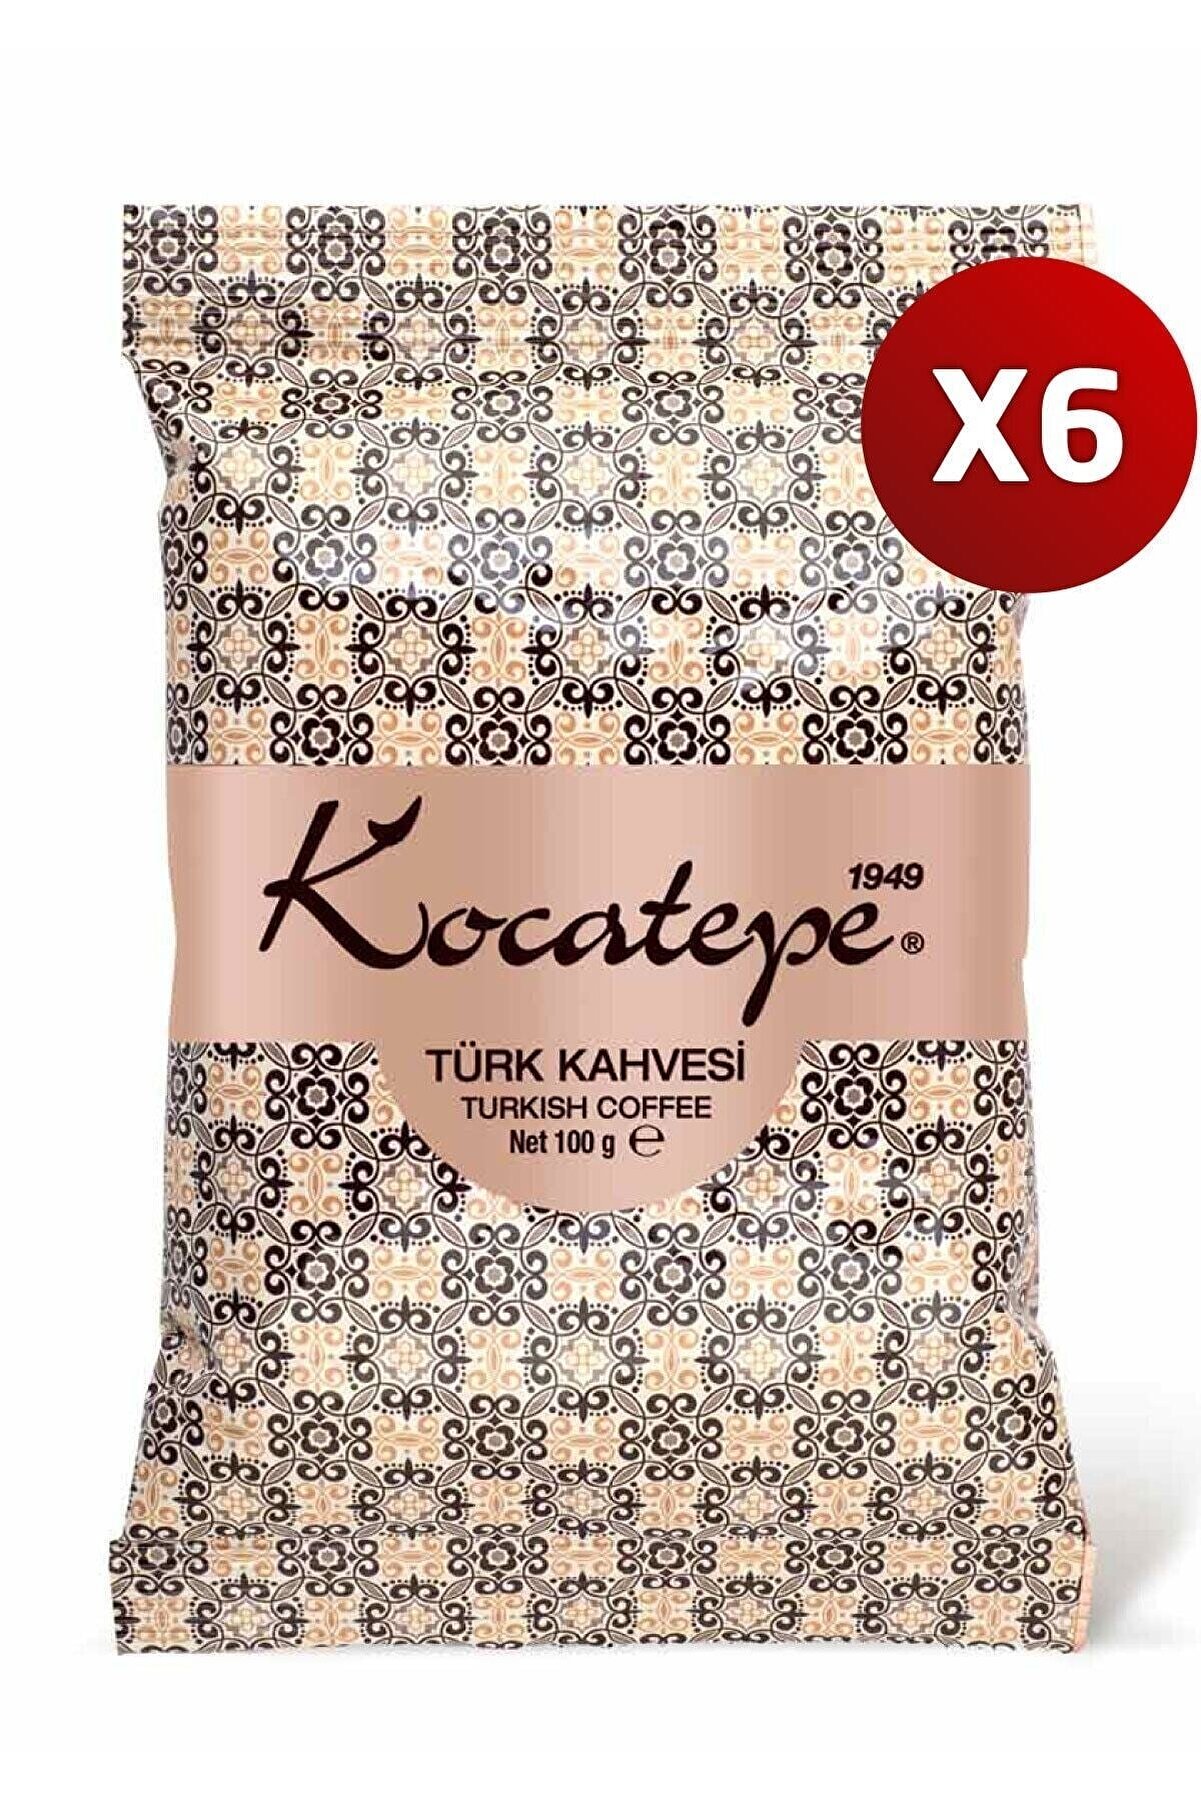 KOCATEPE KAHVE Kocatepe Türk Kahvesi 100 Gr Folyo 6'lı Paket